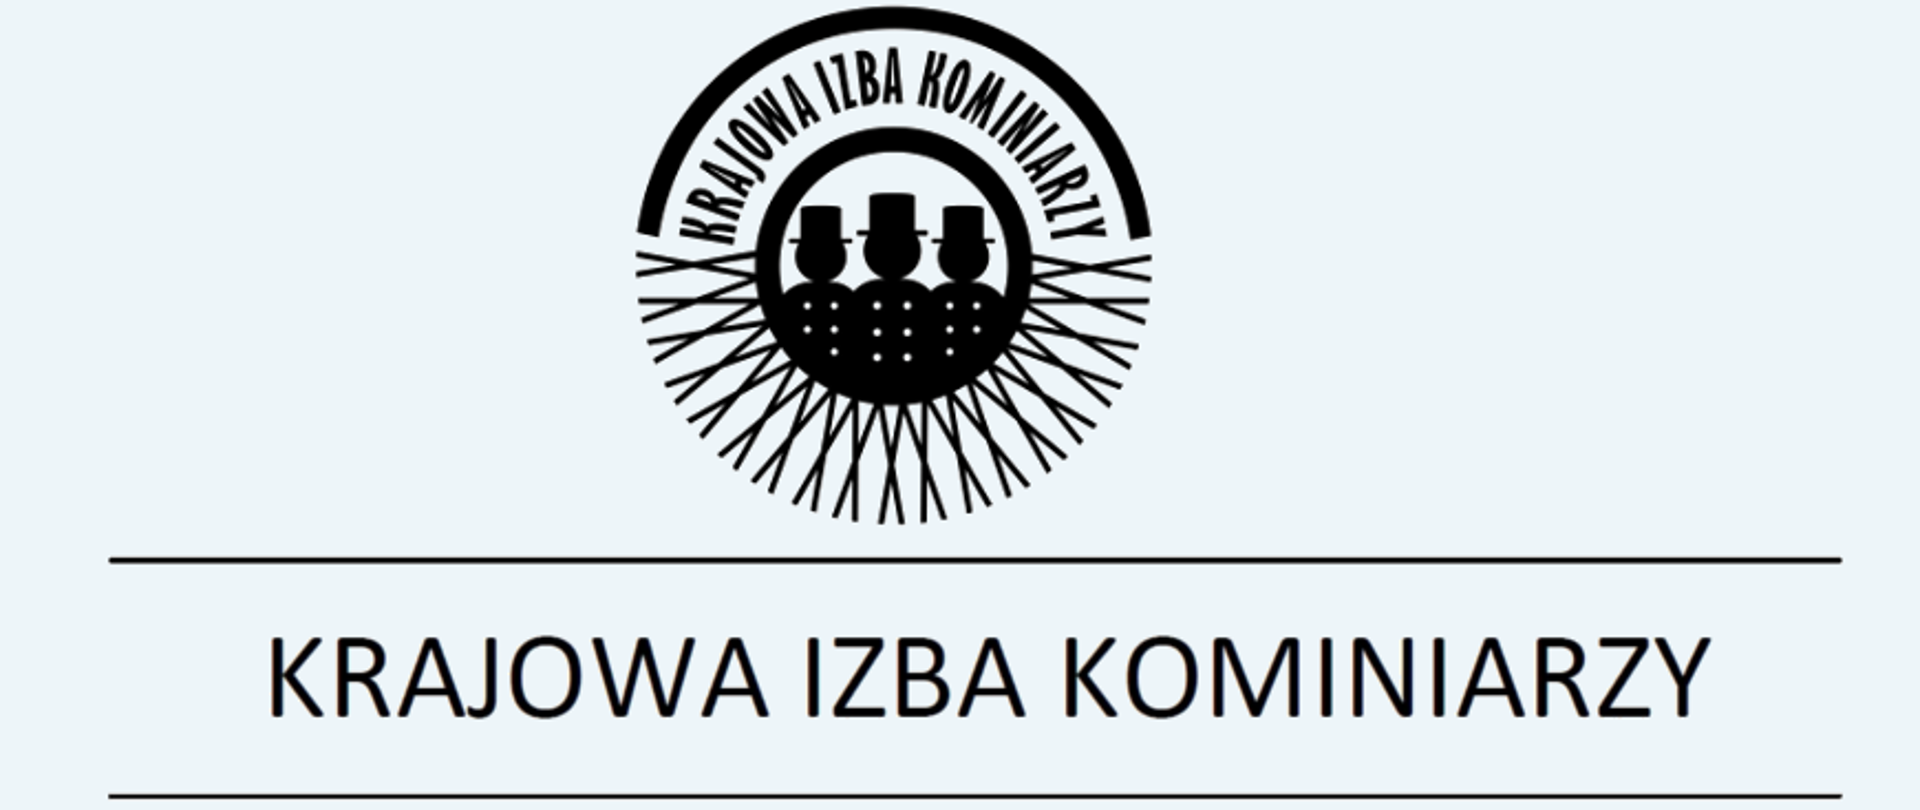 Zdjęcie przedstawia logo Krajowej Izby Kominiarzy